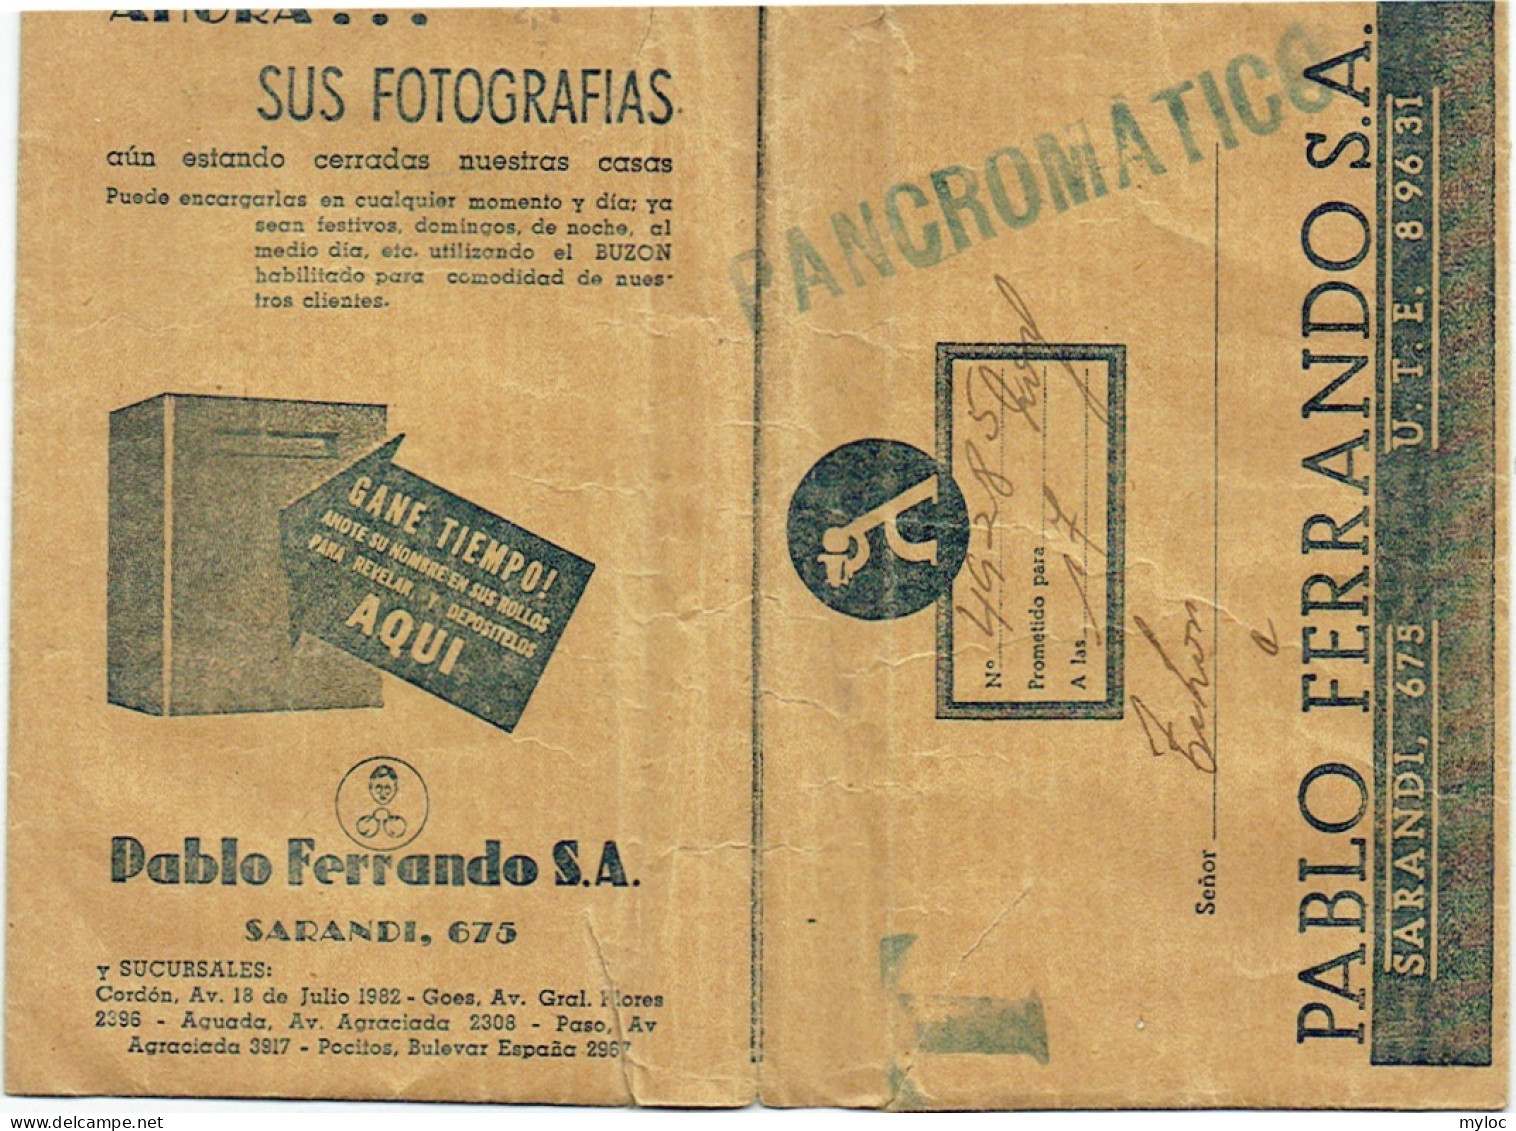 Foto/Photo. Pablo Ferrando, Sarandi, Uruguay. Ancienne Pochette Vide. - Materiale & Accessori